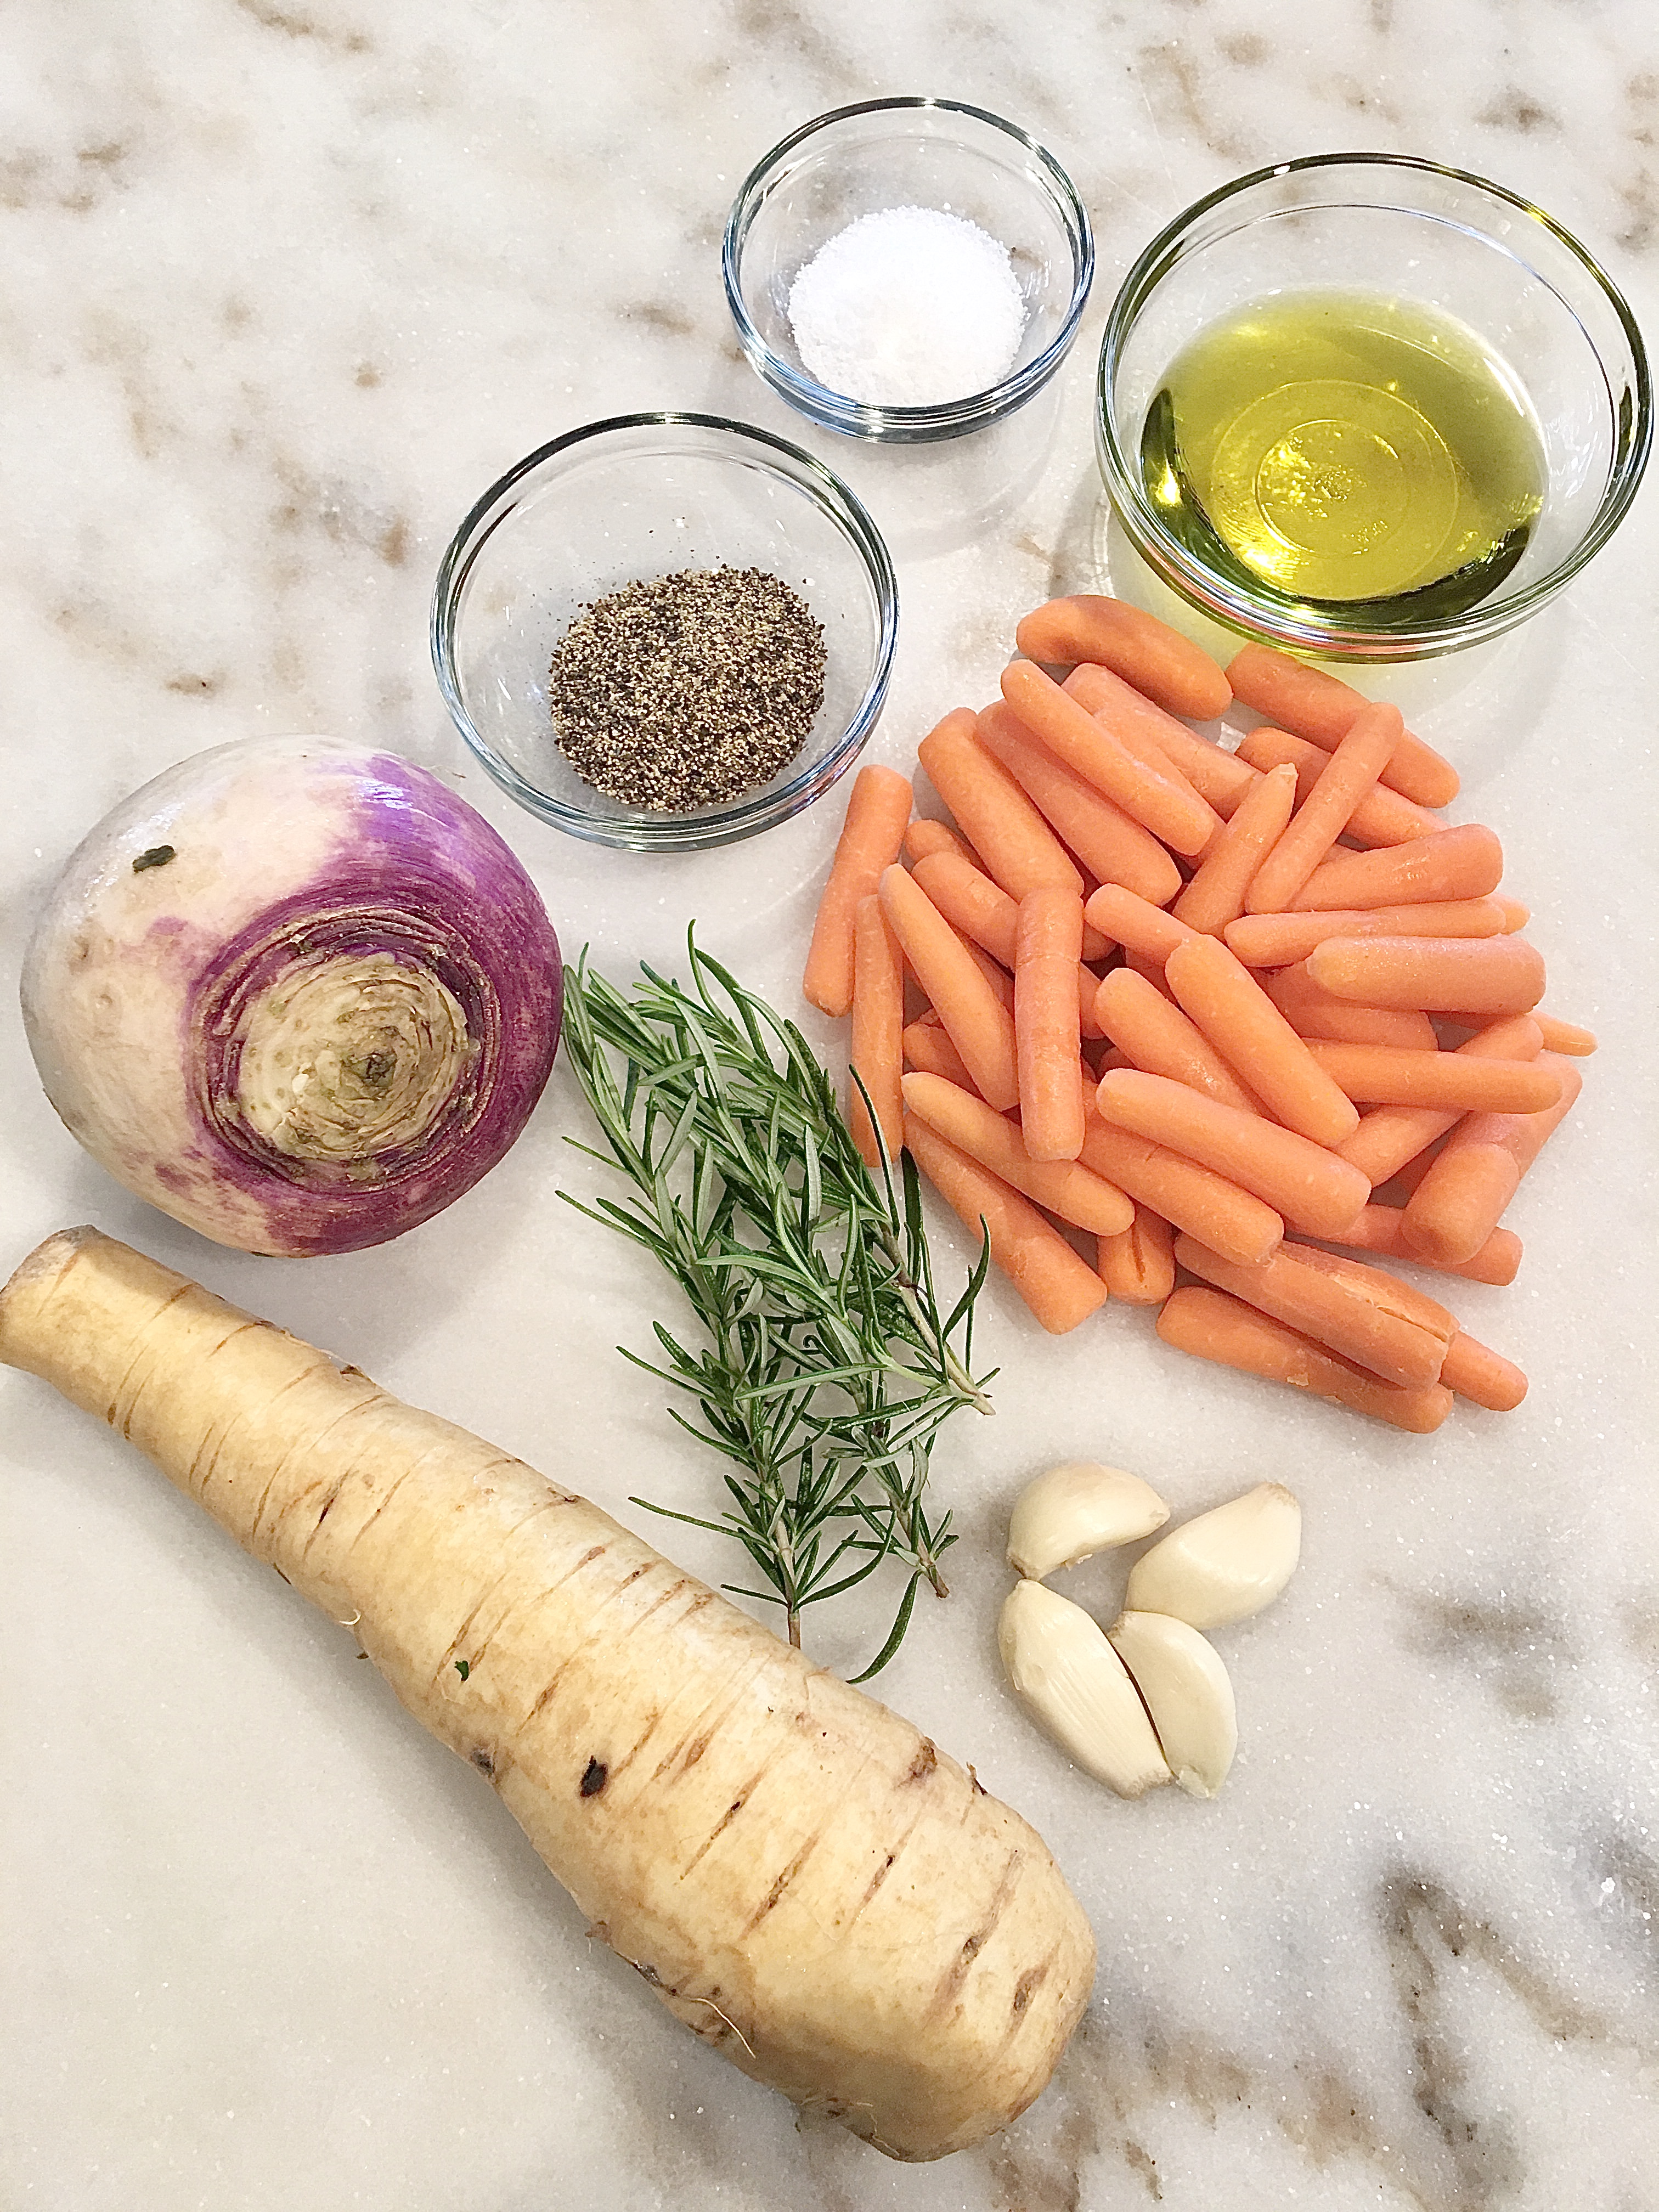 winter root vegetables full of parsnips, turnips, and carrots, fresh rosemary, garlic, pepper, salt, olive oil